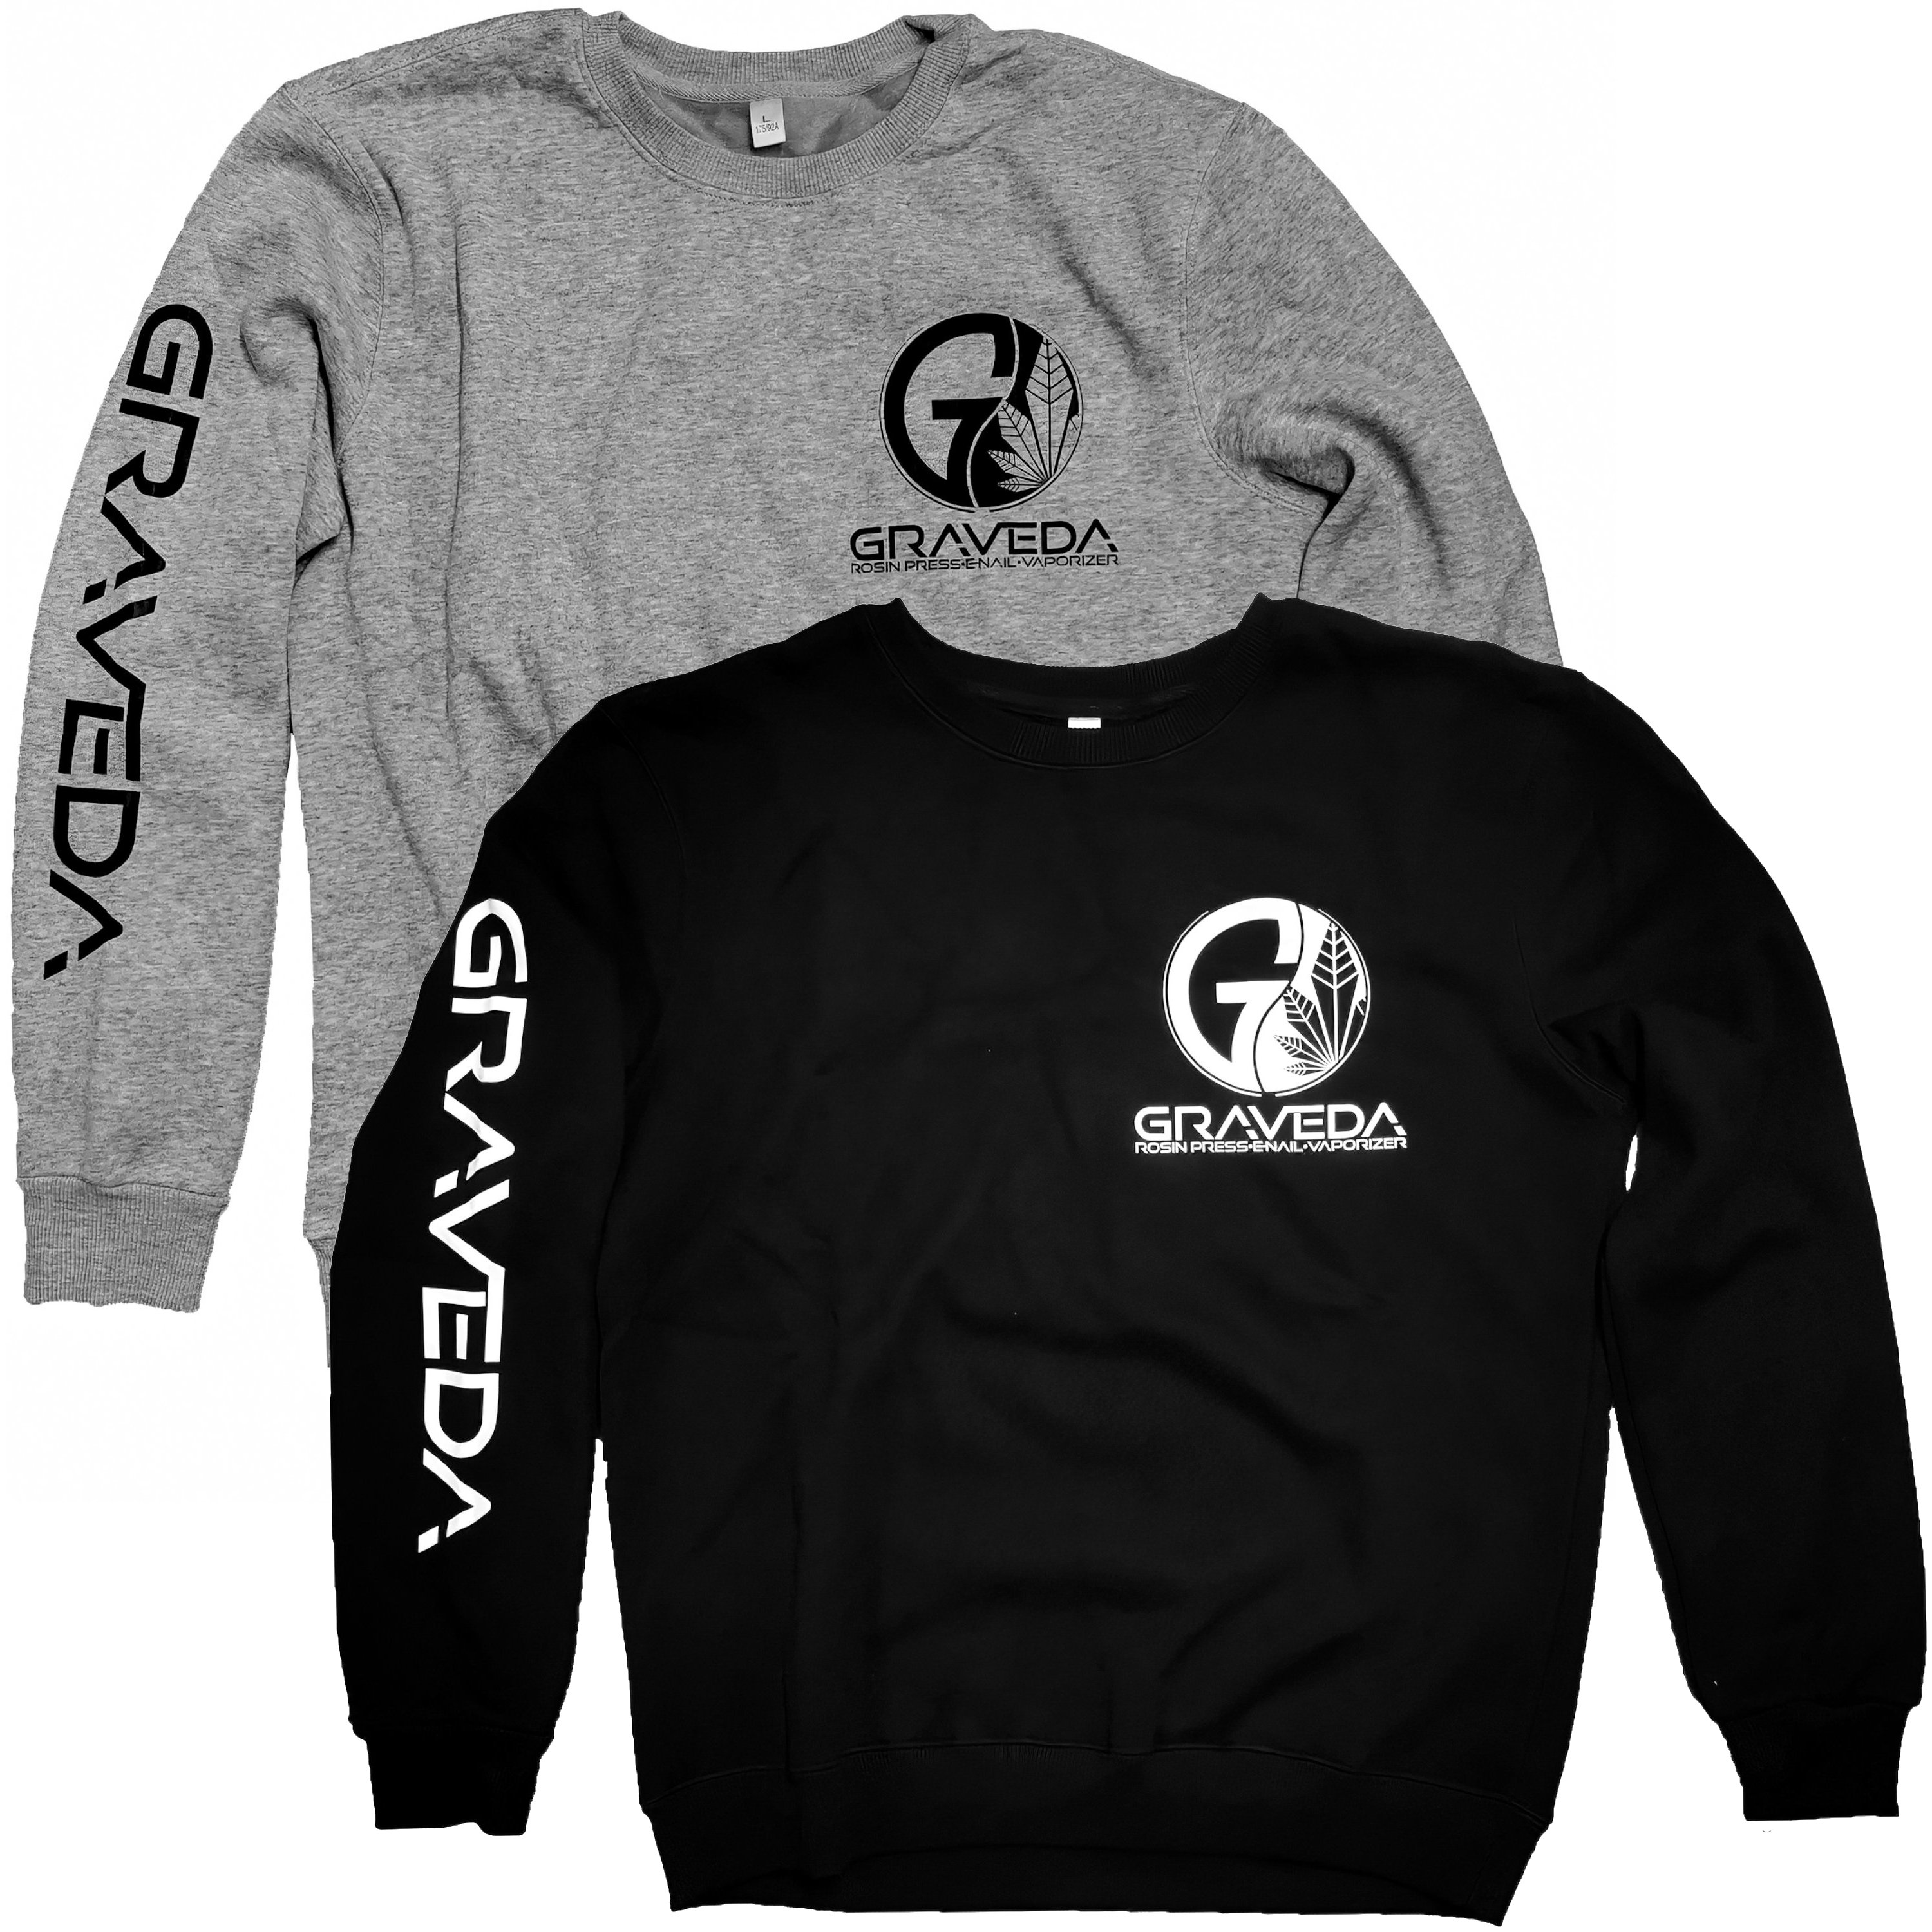 Graveda Sweatshirt, 280g/m², in schwarz oder grau